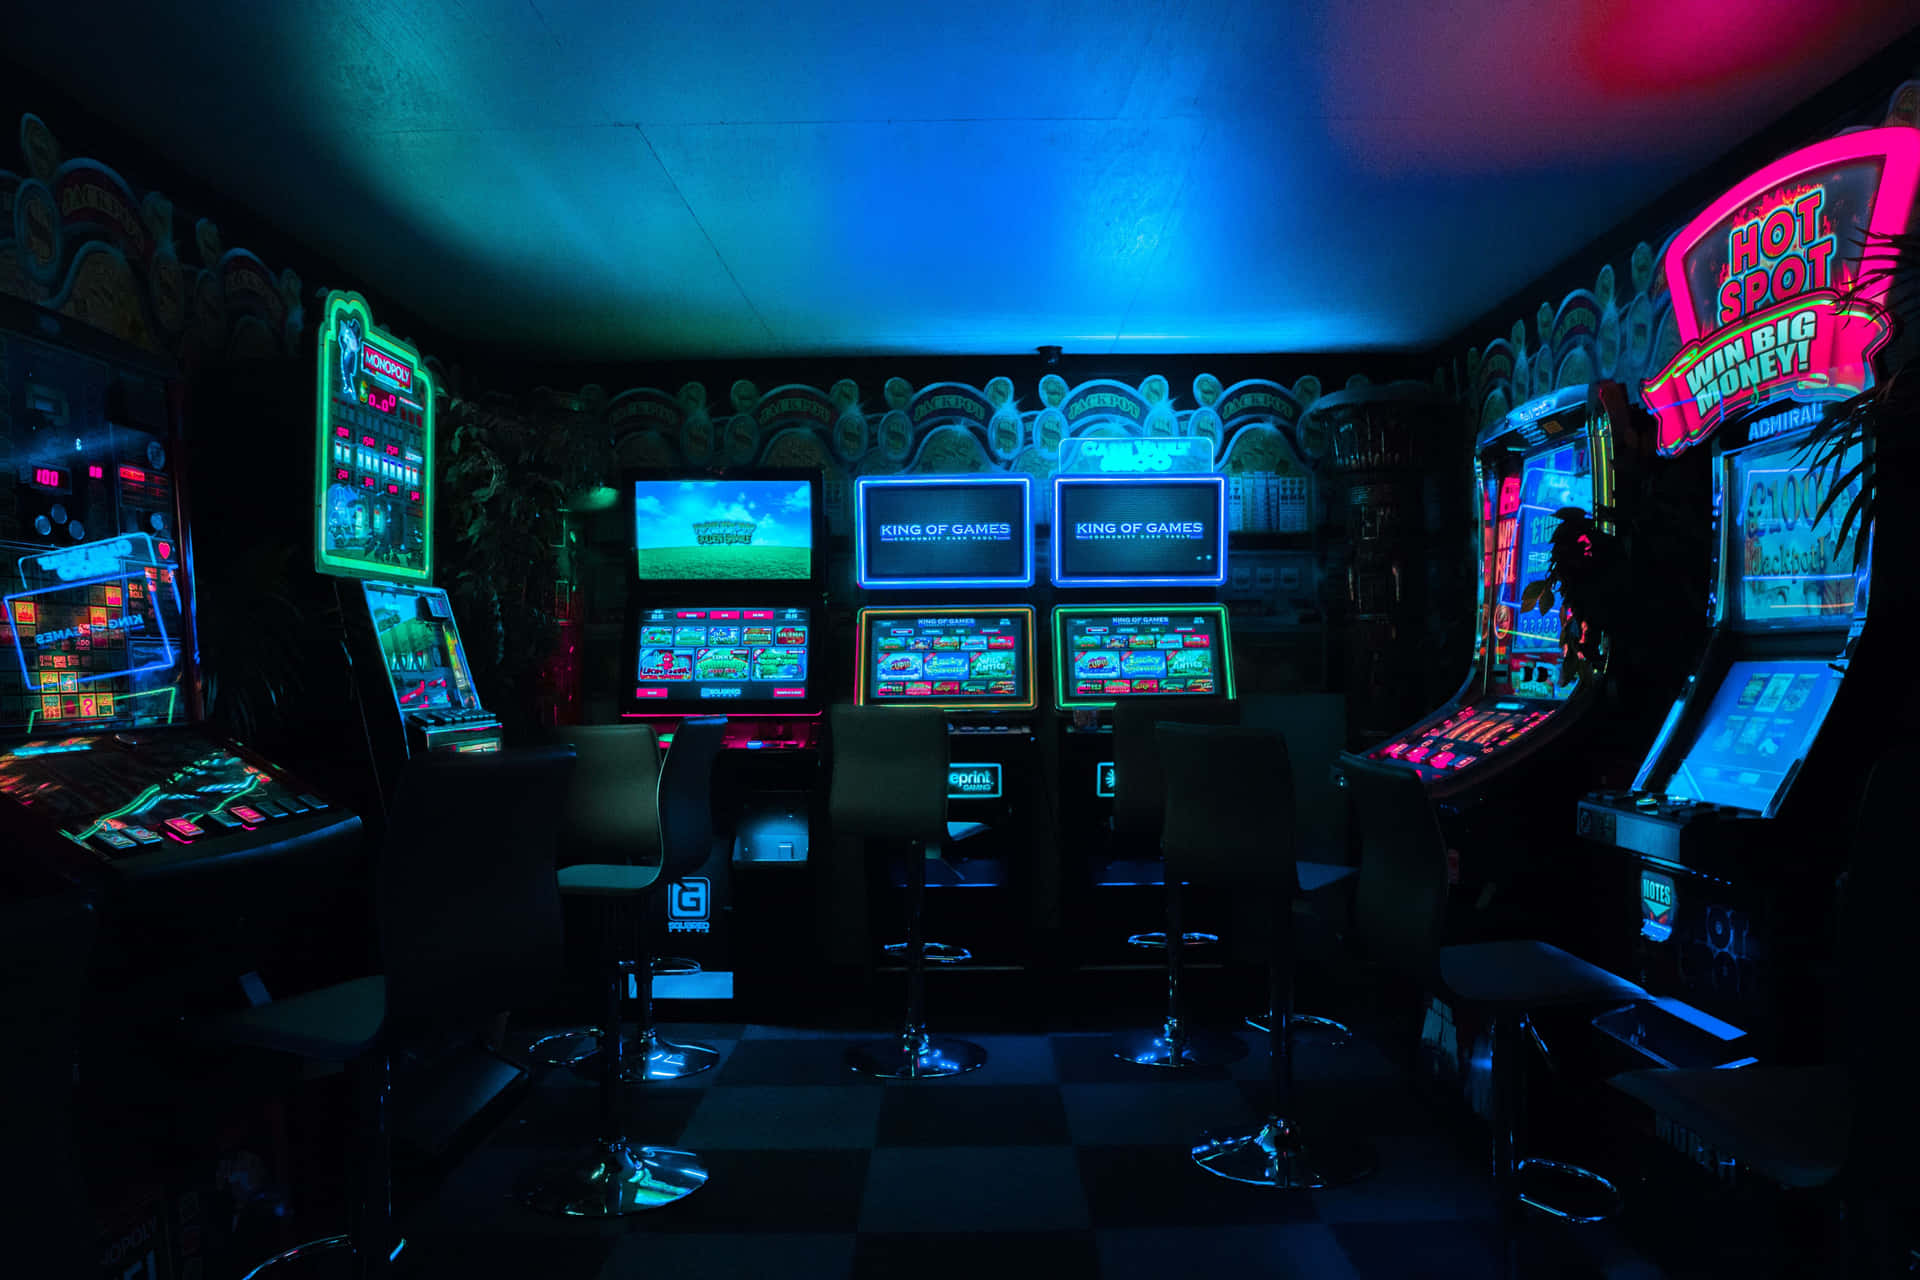 Eincasino-raum Mit Vielen Spielautomaten